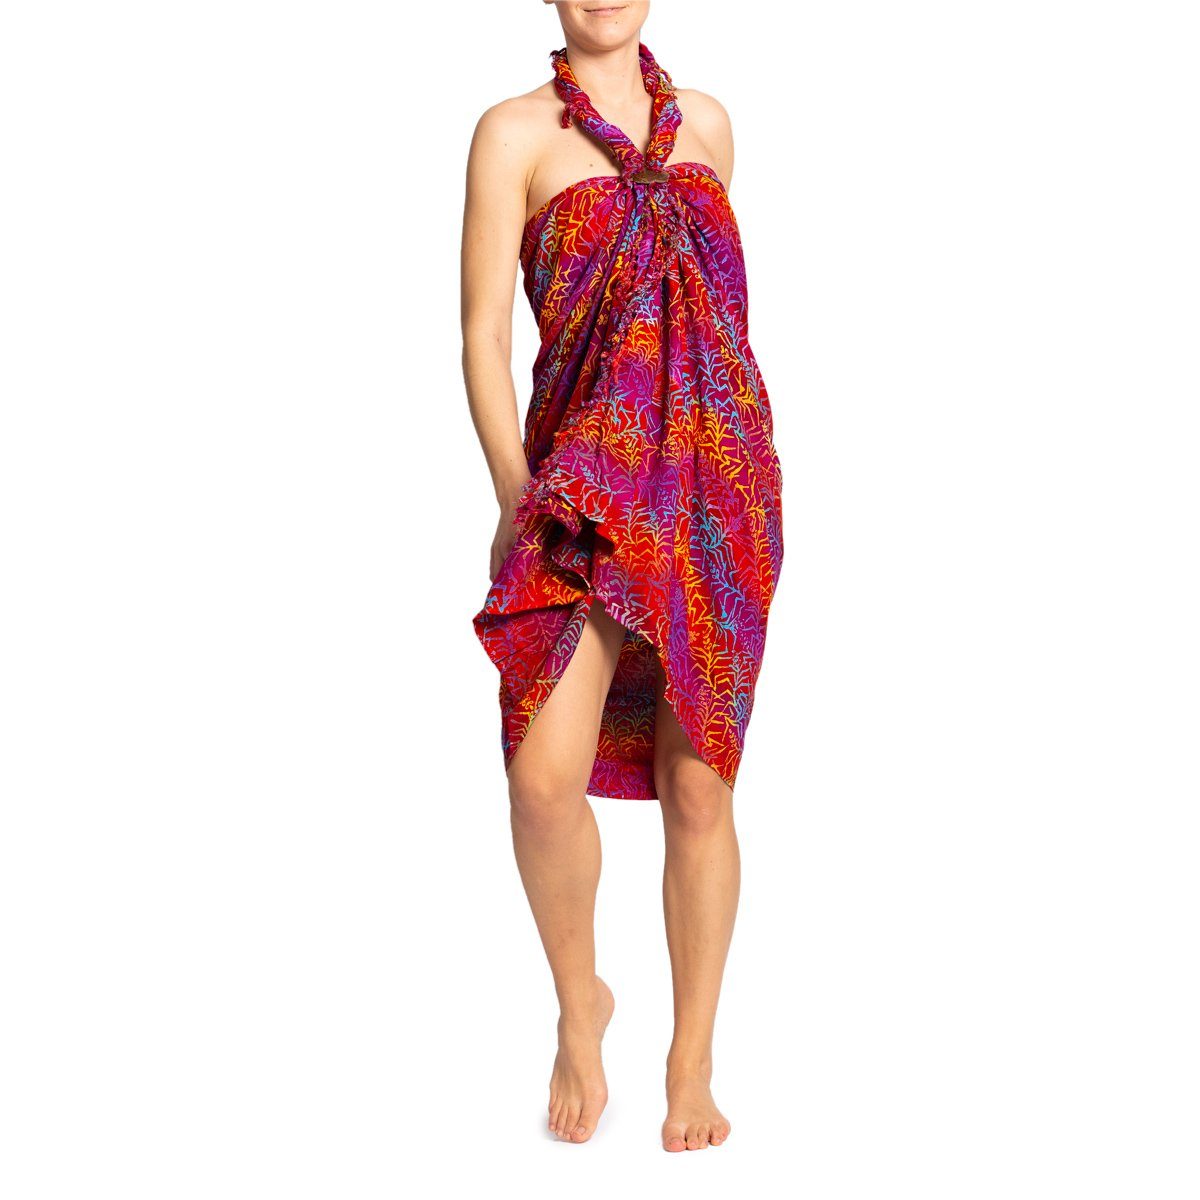 PANASIAM Pareo Sarong Wachsbatik Rottöne aus hochwertiger Viskose Strandtuch, Strandkleid Bikini Cover-up Tuch für den Strand Schultertuch Halstuch B502 redtone